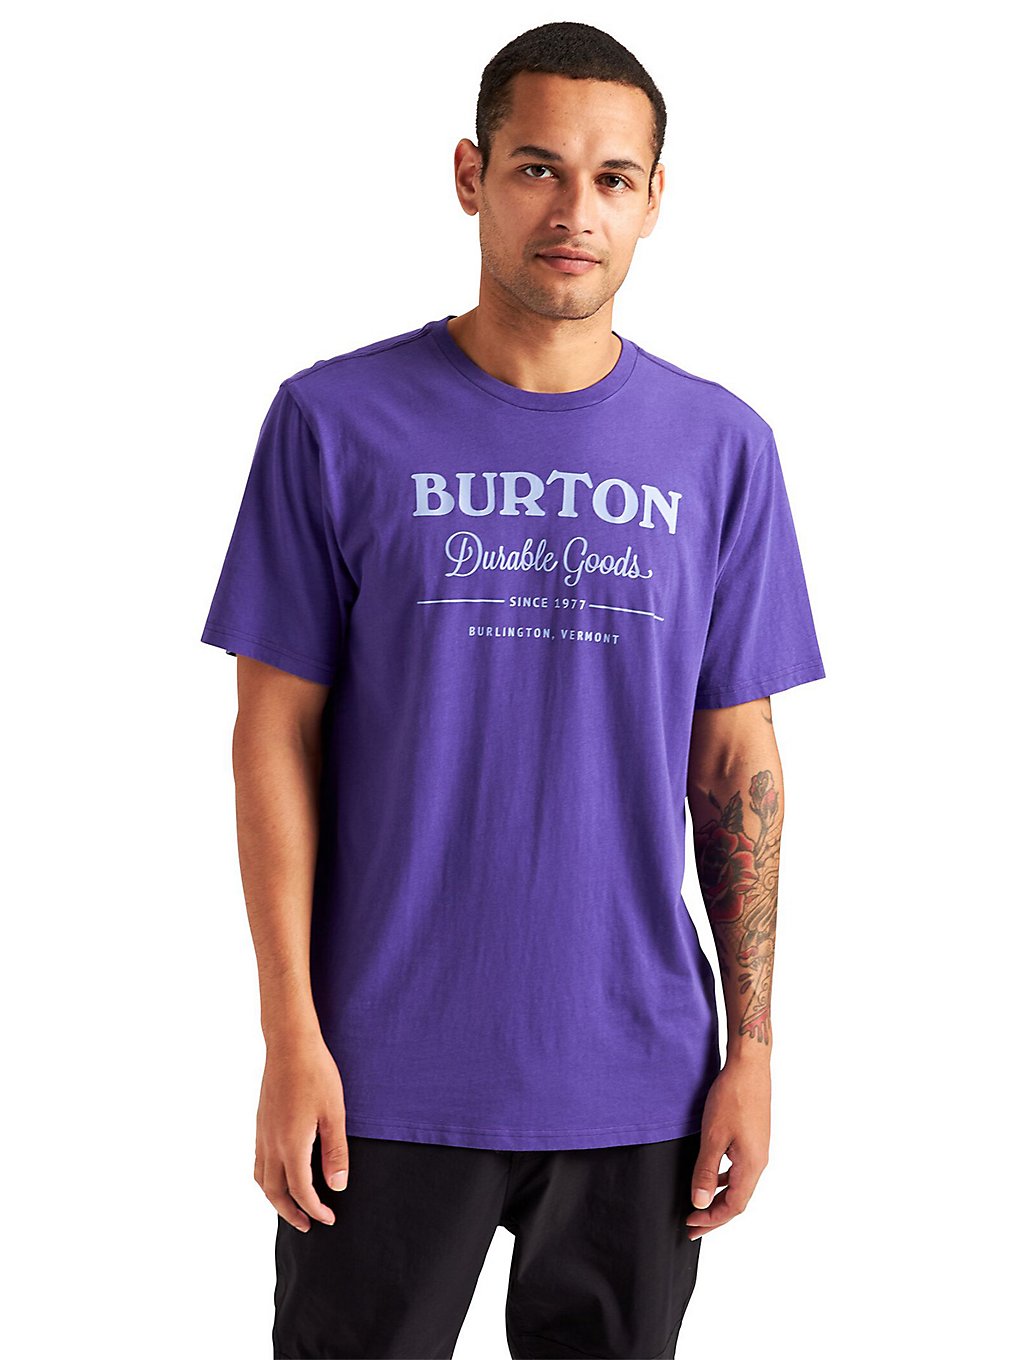 Burton Durable Goods T-Shirt prism violet